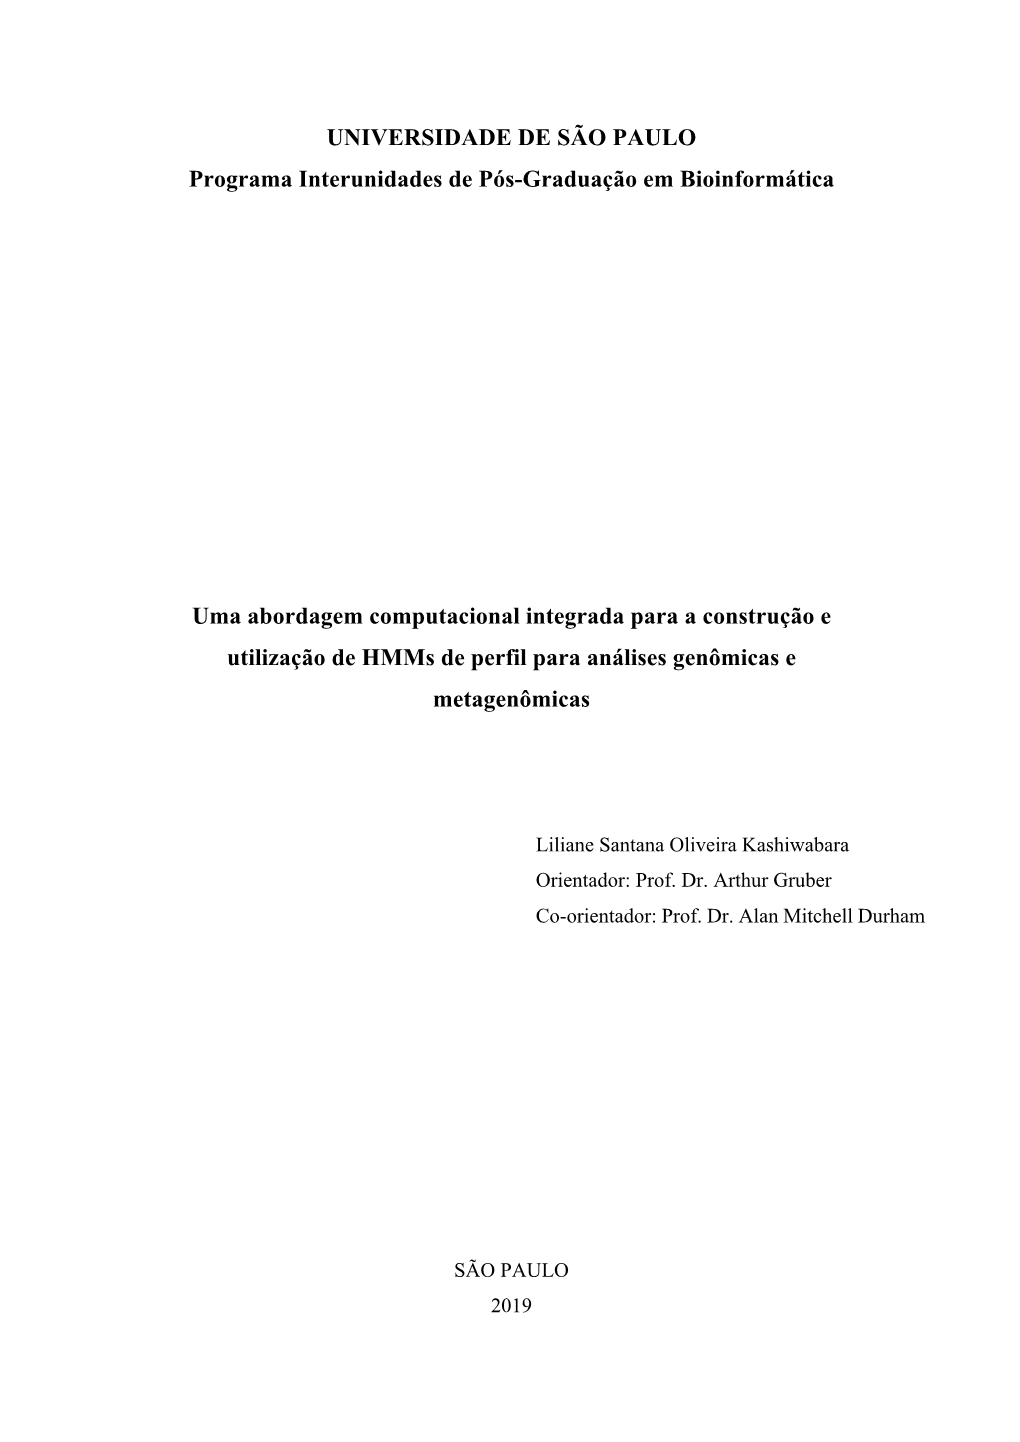 UNIVERSIDADE DE SÃO PAULO Programa Interunidades De Pós-Graduação Em Bioinformática